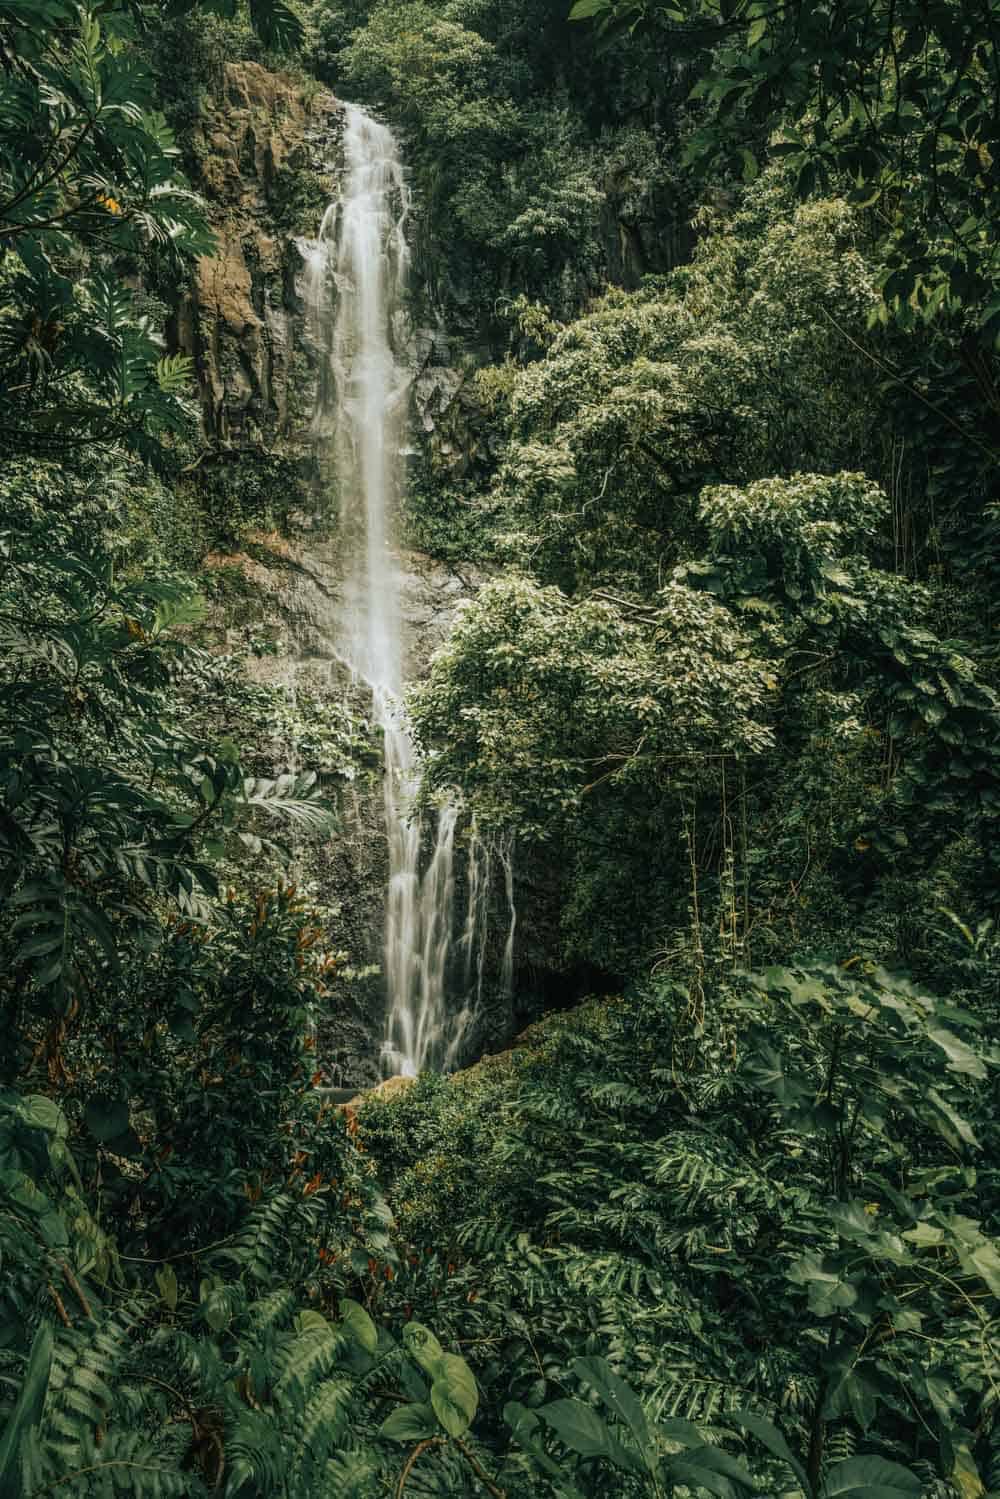 Wailua Falls in Maui Hawaii